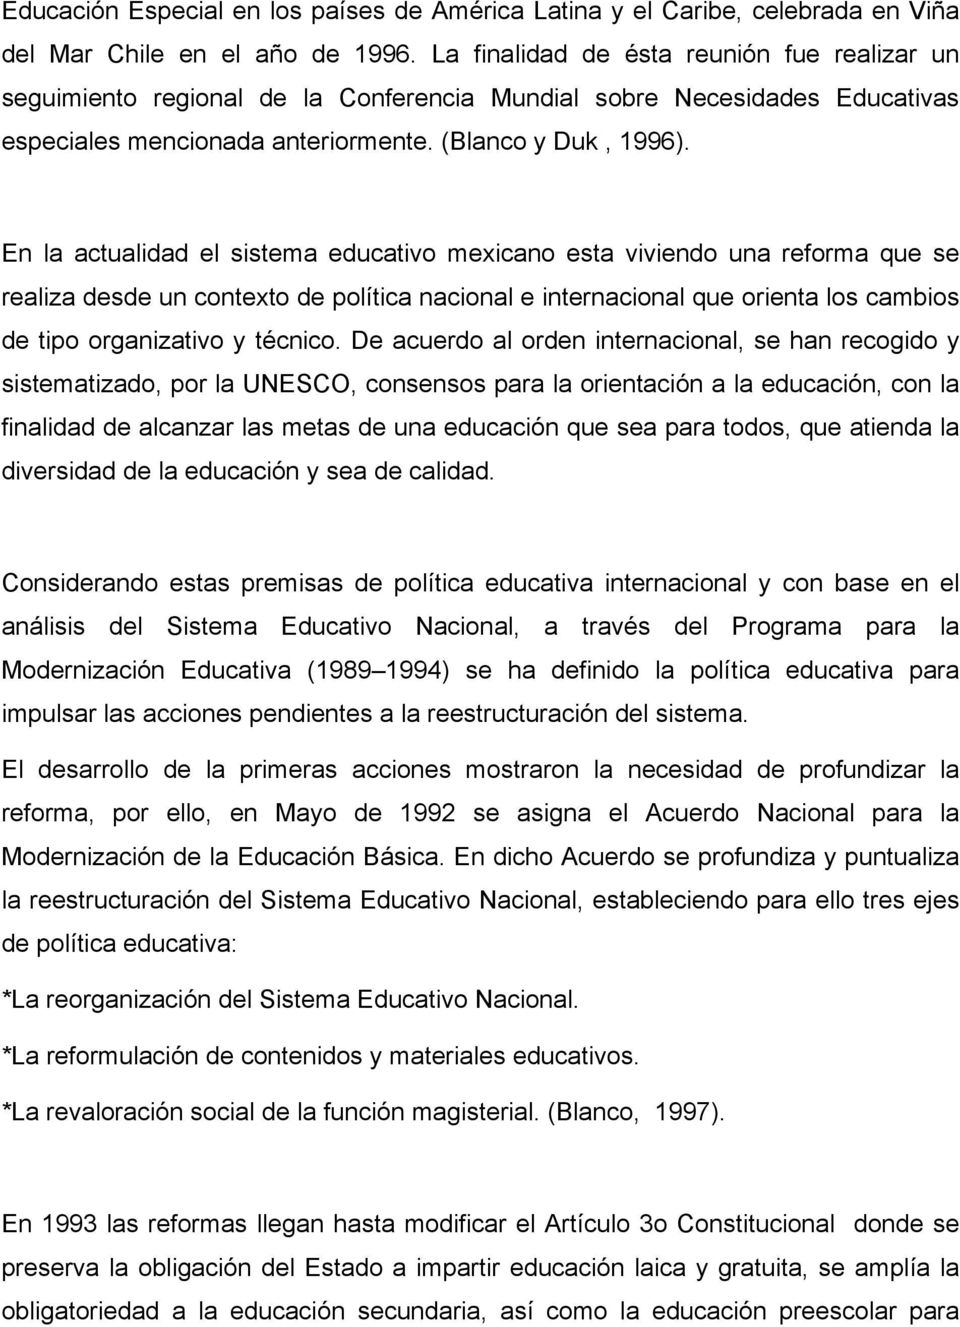 En la actualidad el sistema educativo mexicano esta viviendo una reforma que se realiza desde un contexto de política nacional e internacional que orienta los cambios de tipo organizativo y técnico.